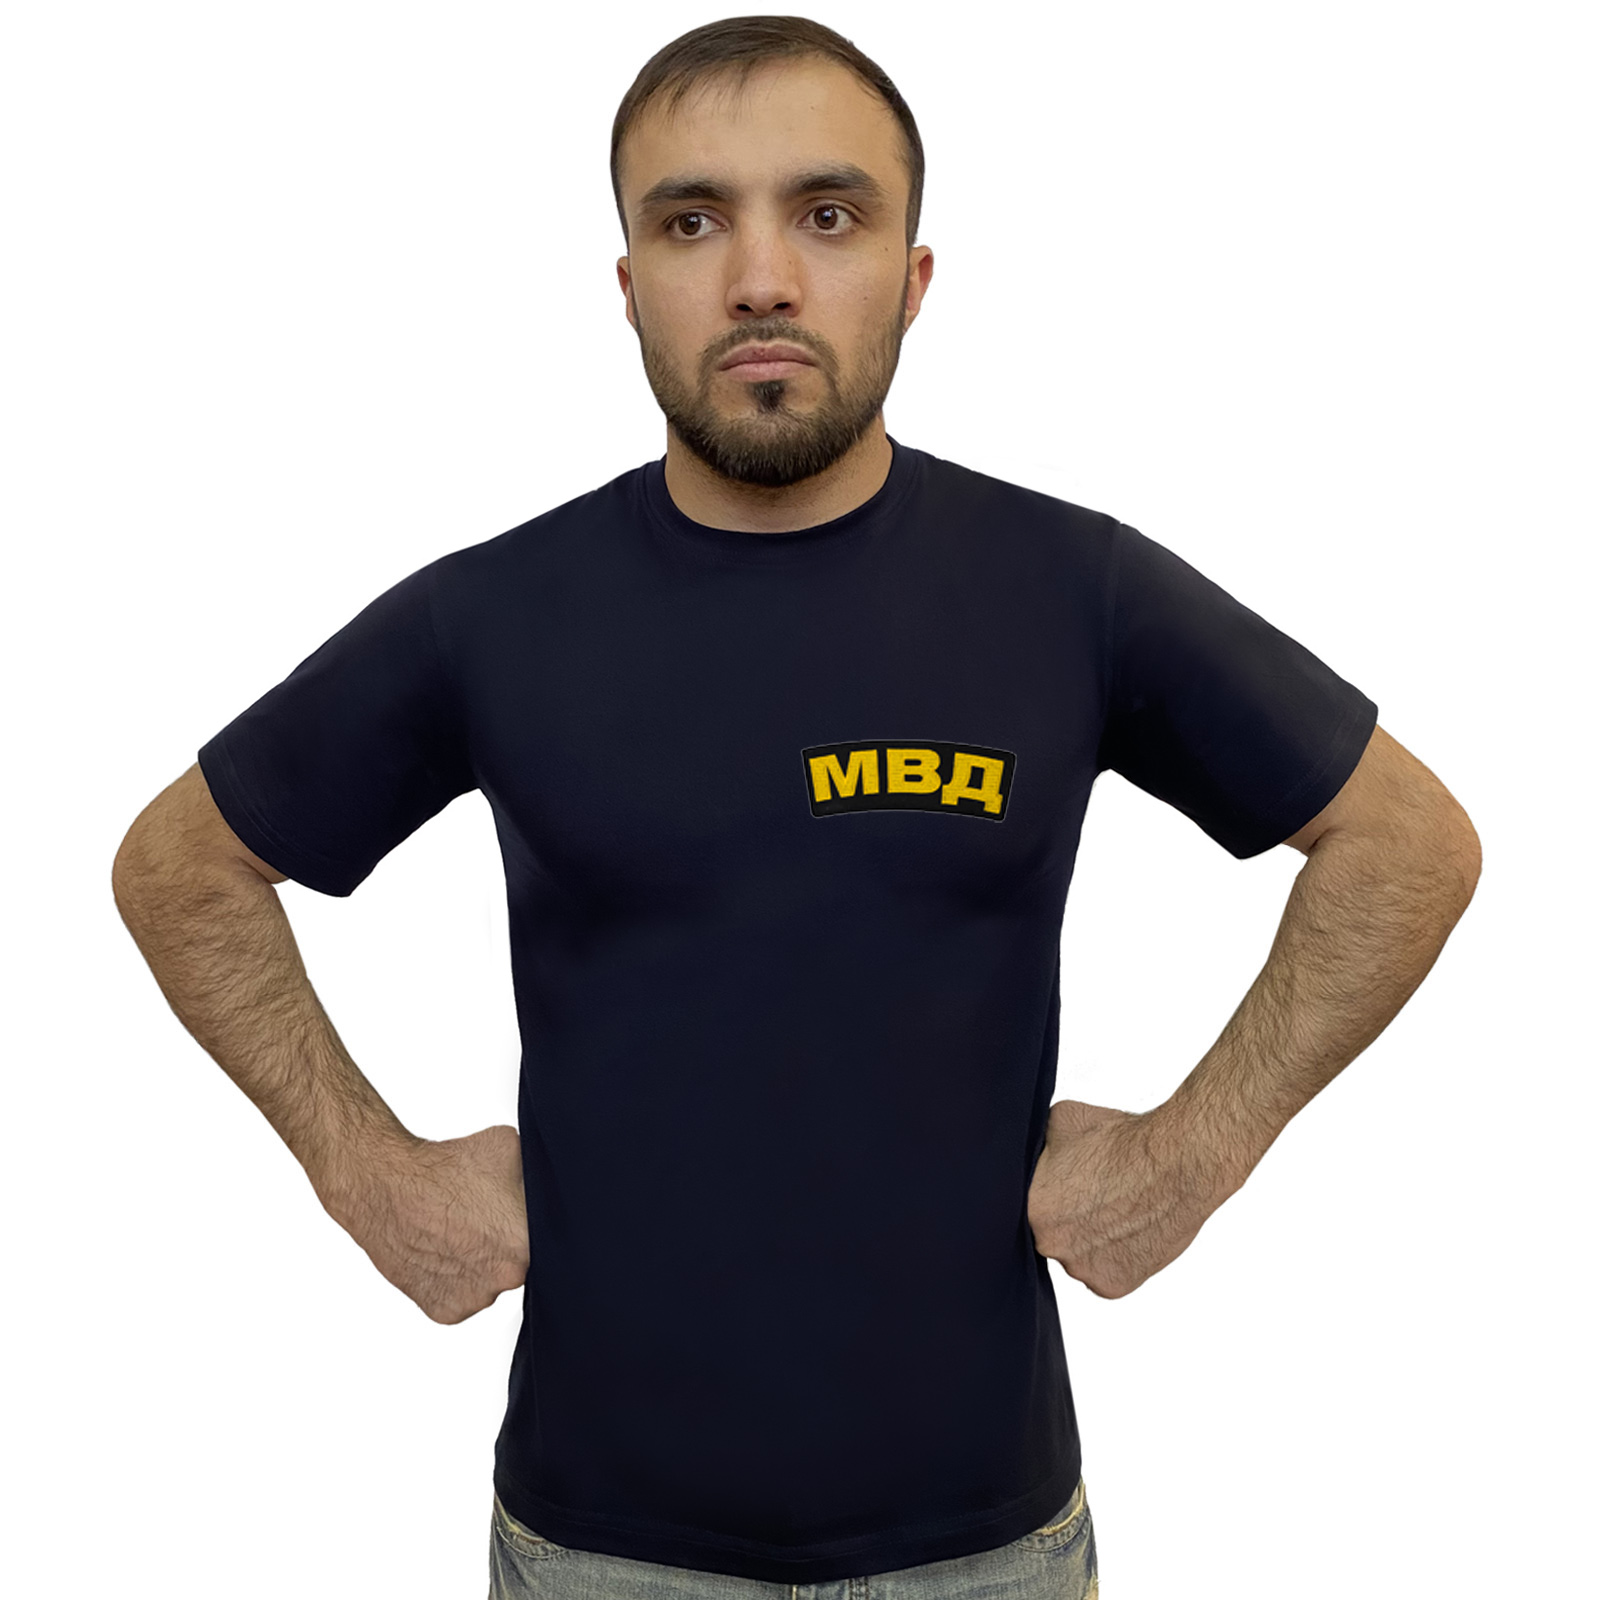 Купить футболку МВД в интернет магазине